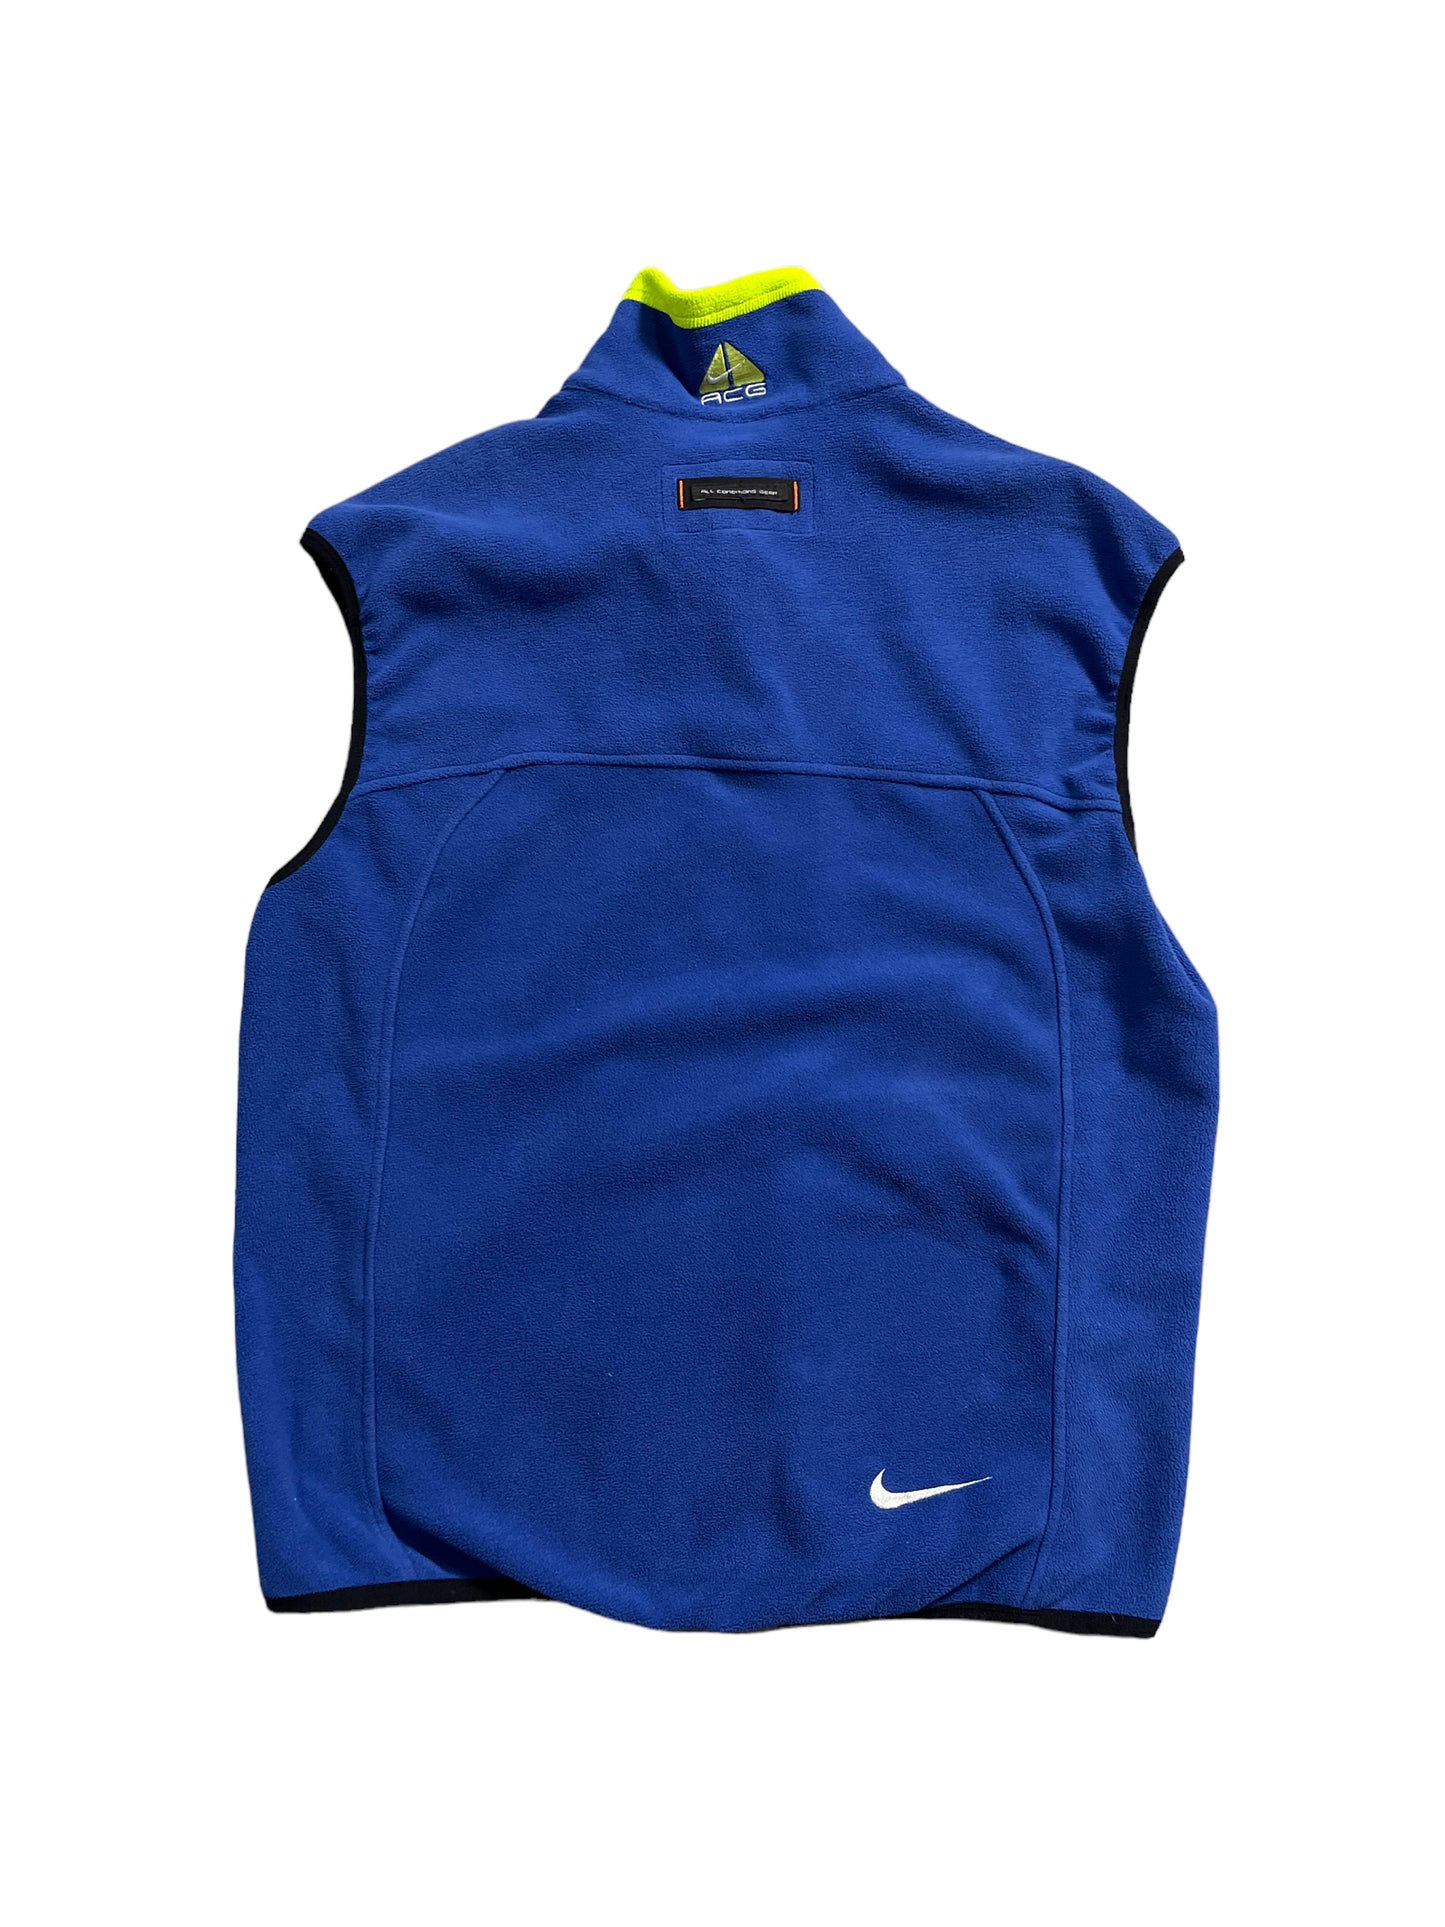 Vintage Nike ACG Vests